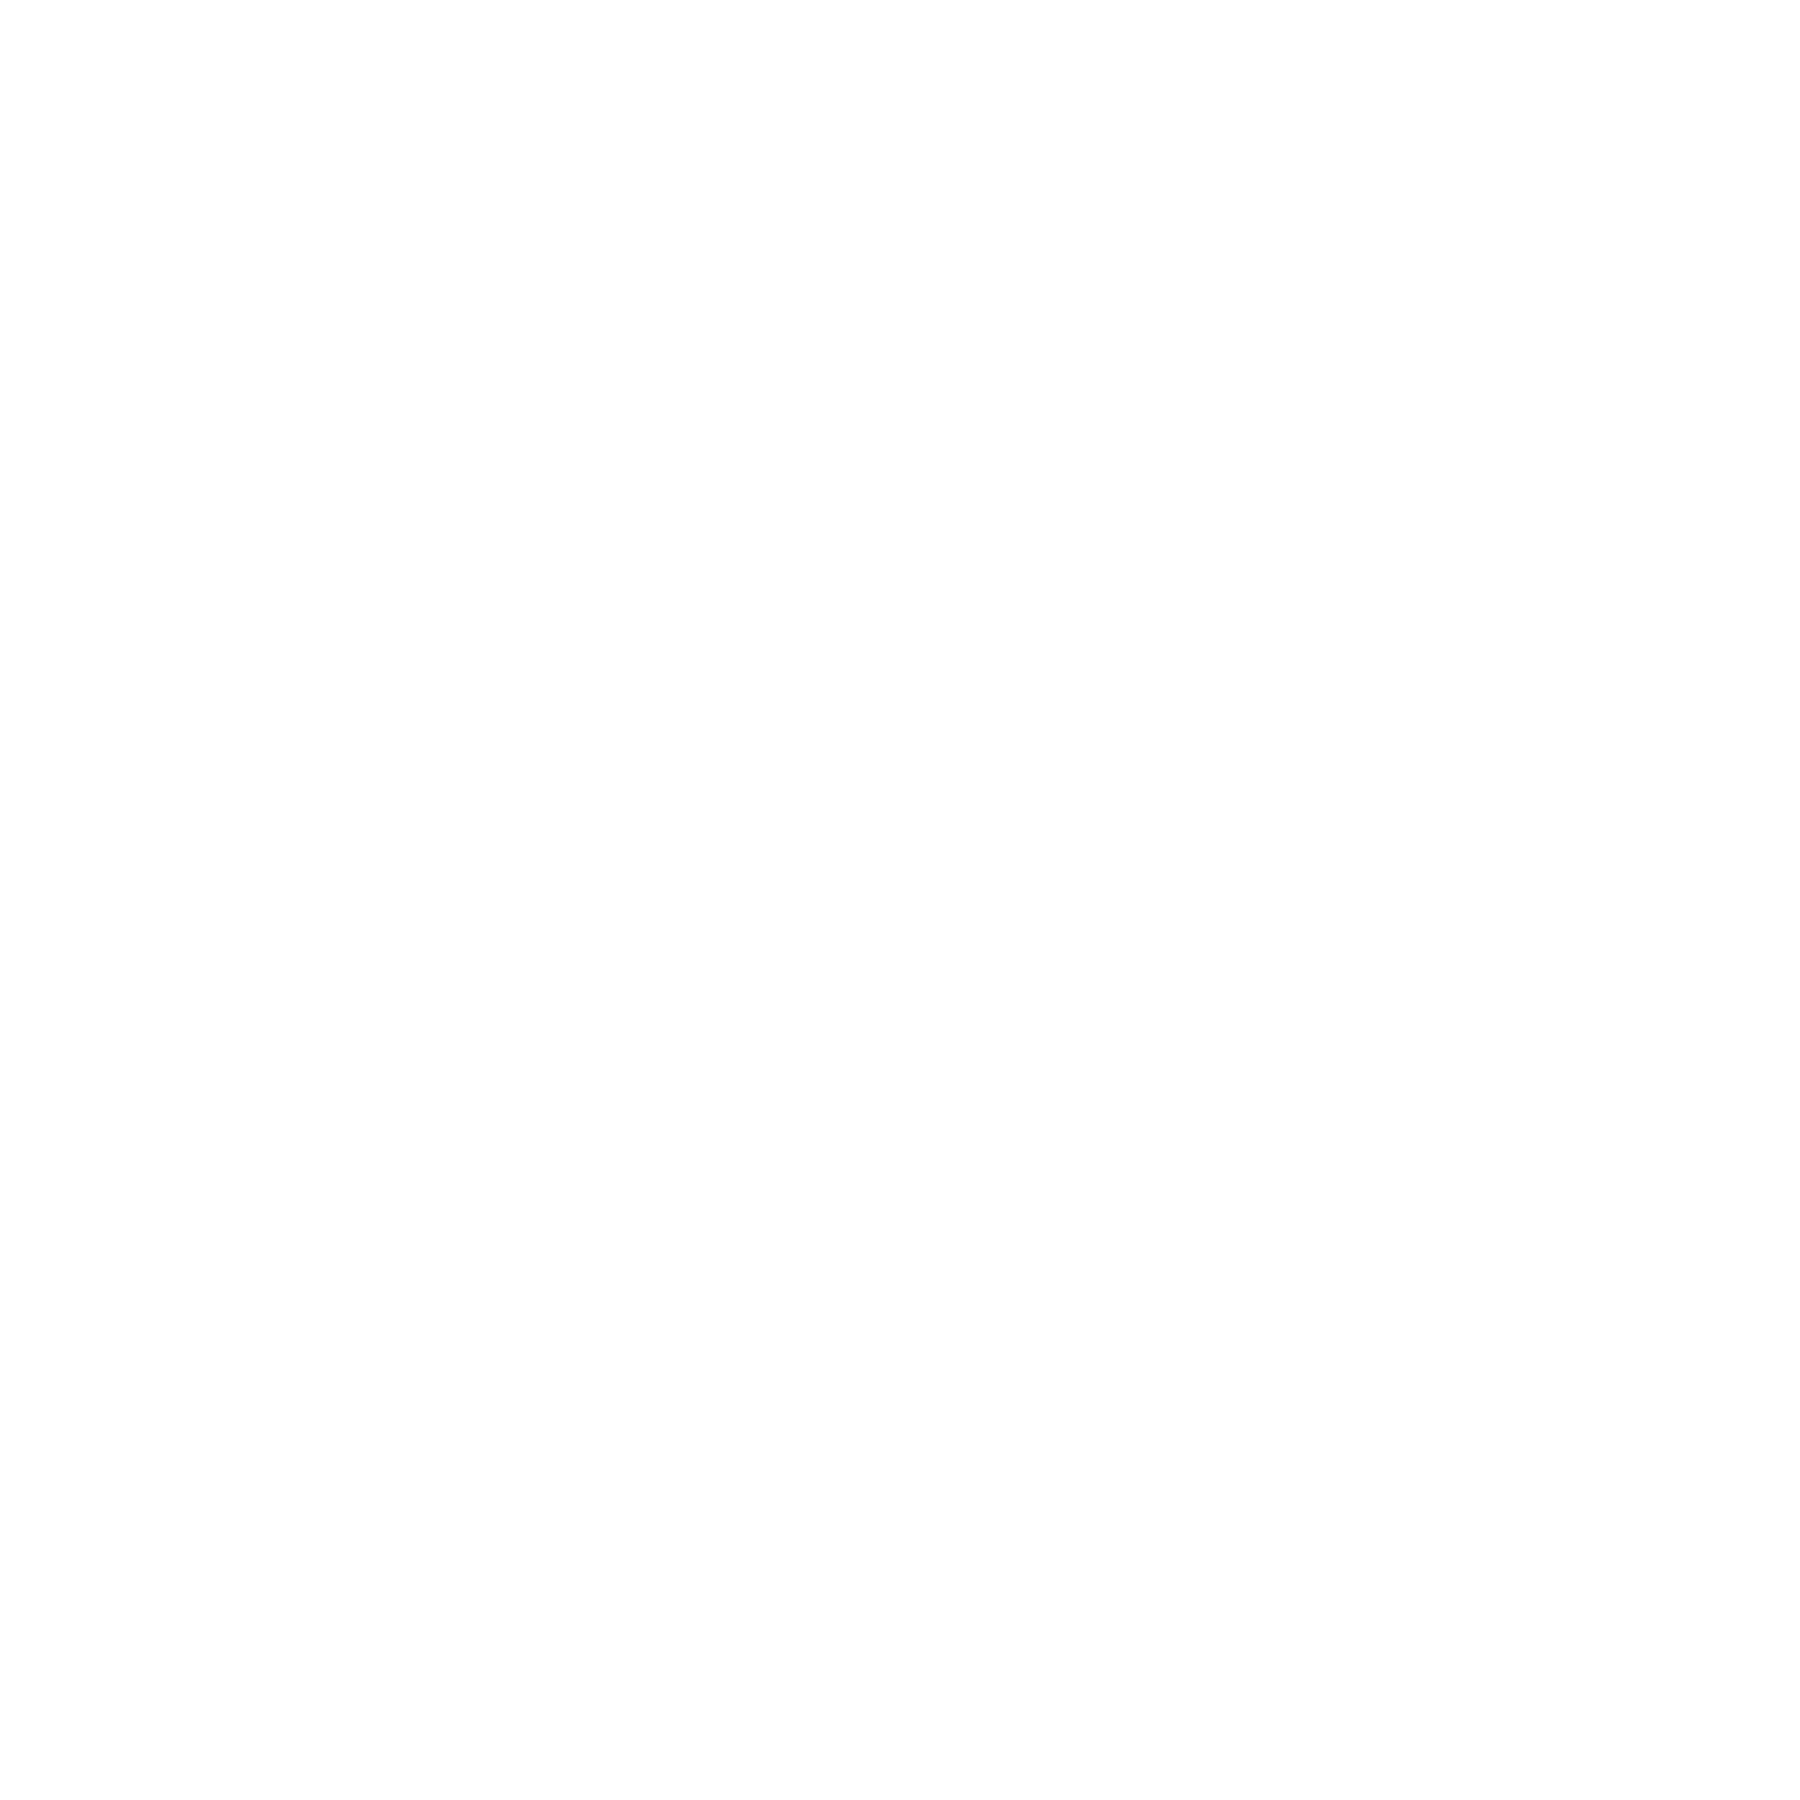 sram mtb parts and components logo